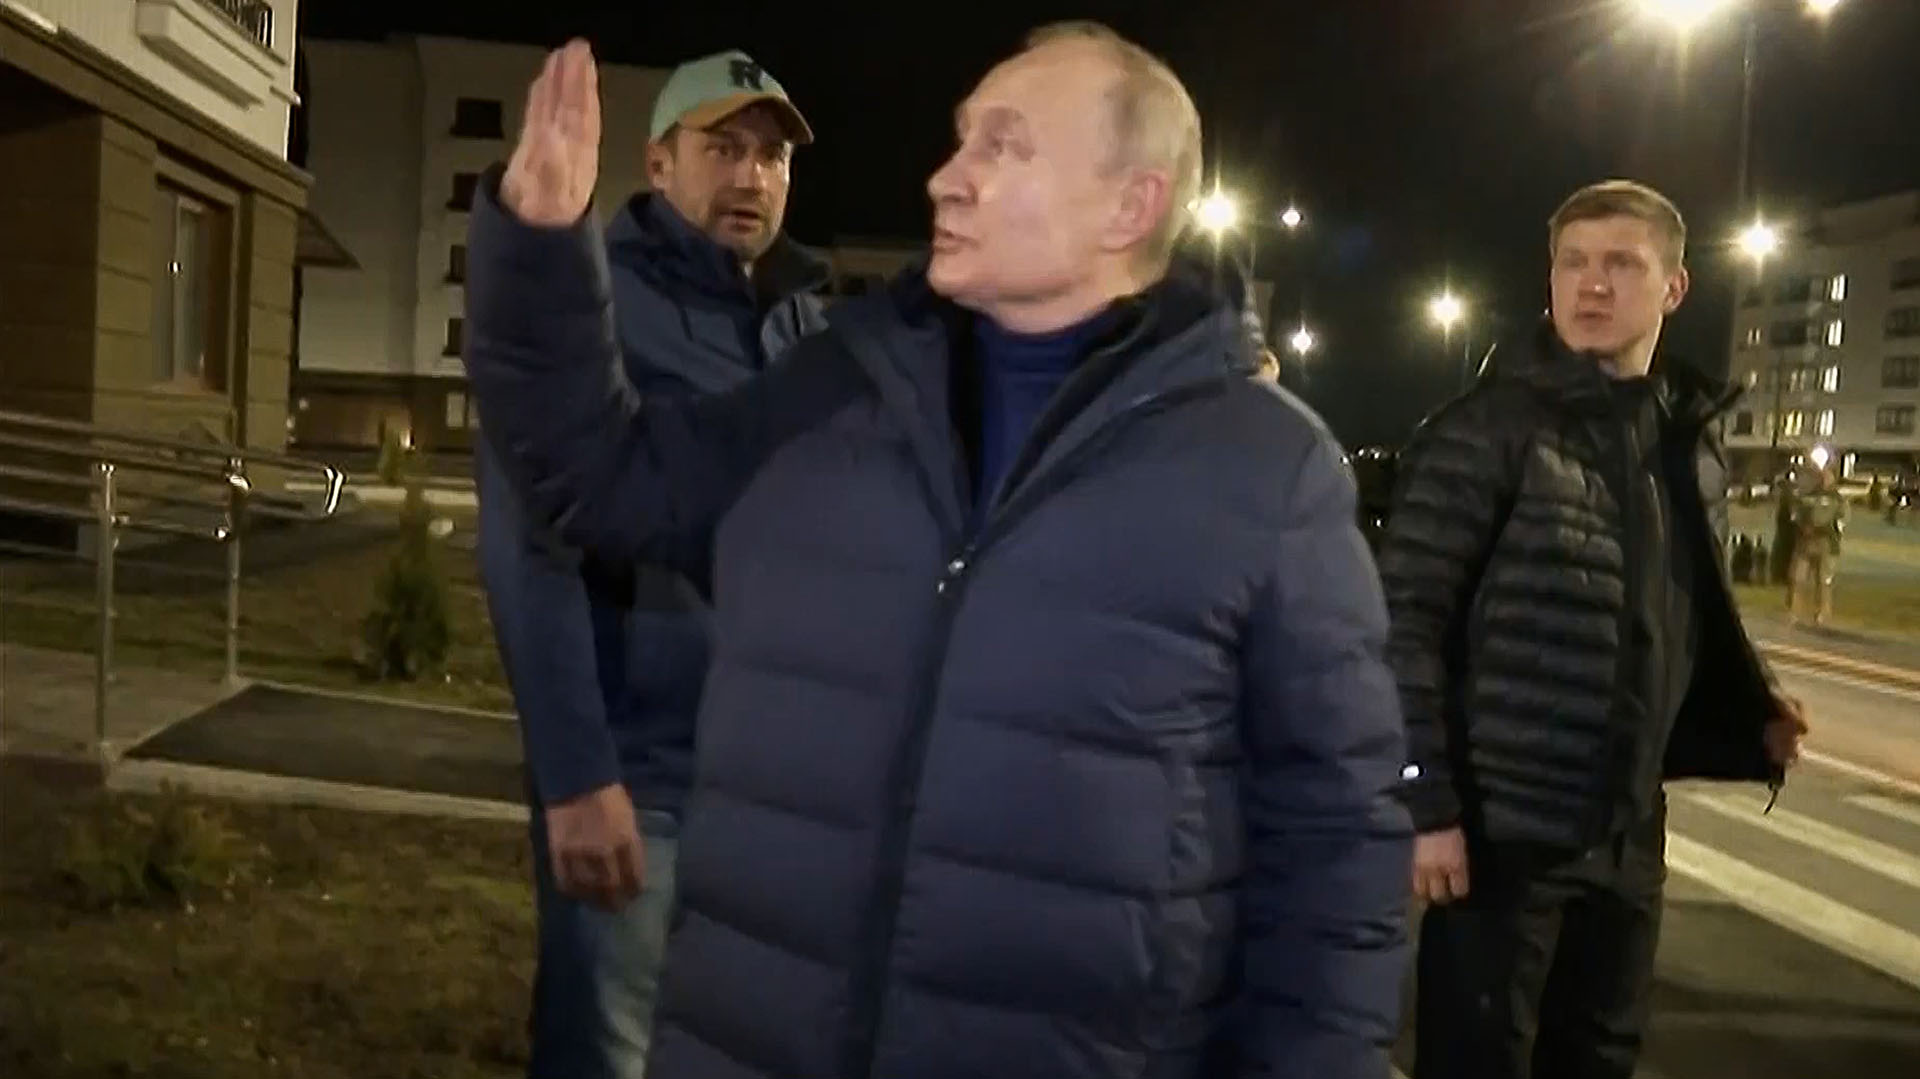 En otro gesto de provocación, Putin visitó la ocupada ciudad ucraniana de Mariupol: “El criminal internacional llegó de noche”